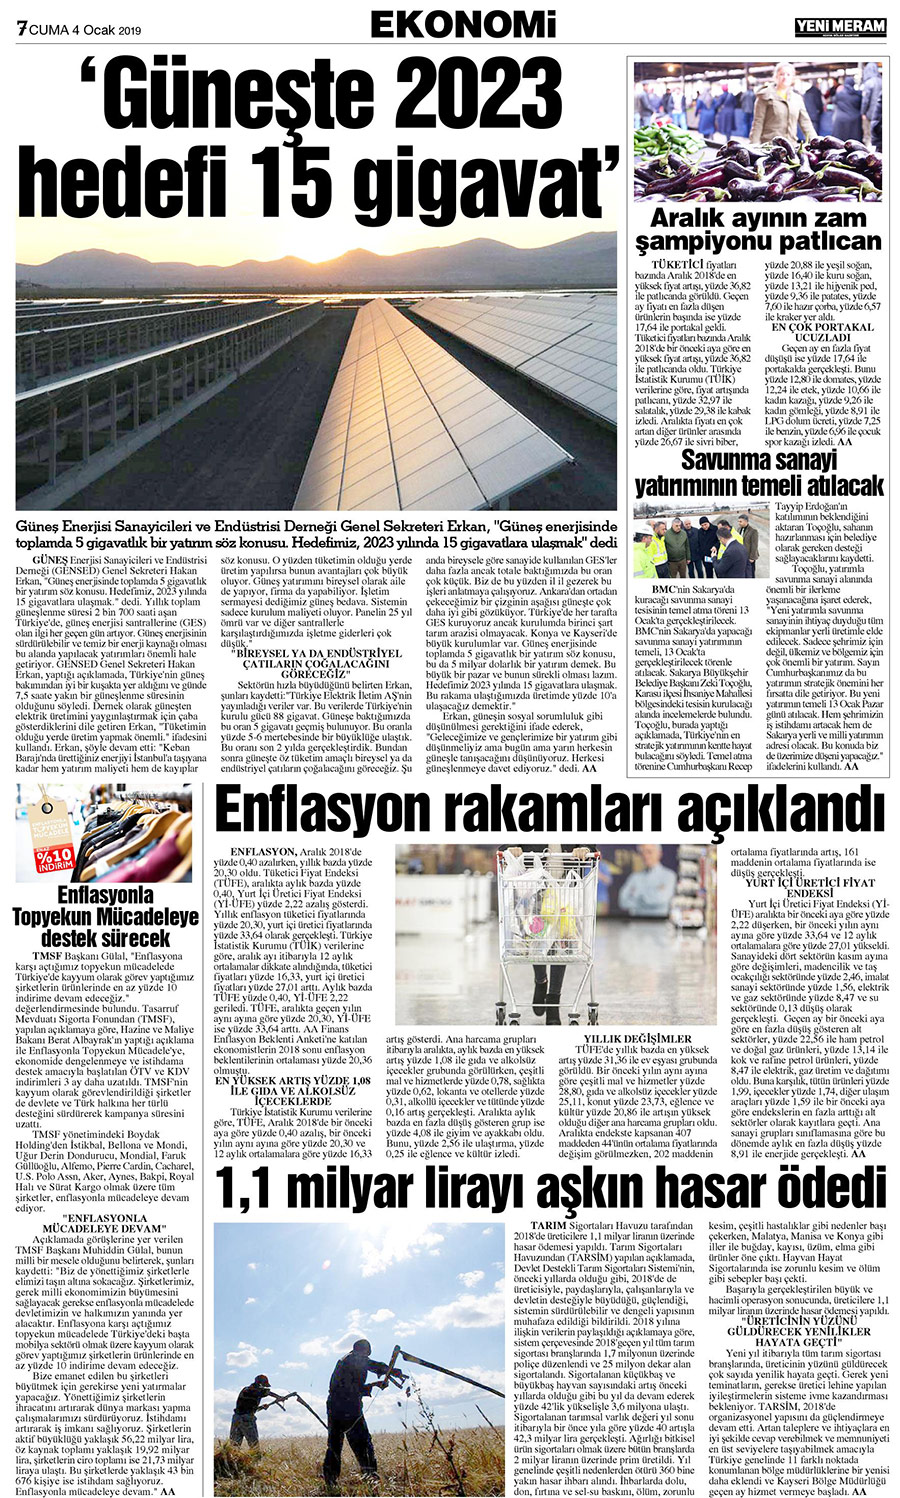 4 Ocak 2019 Yeni Meram Gazetesi